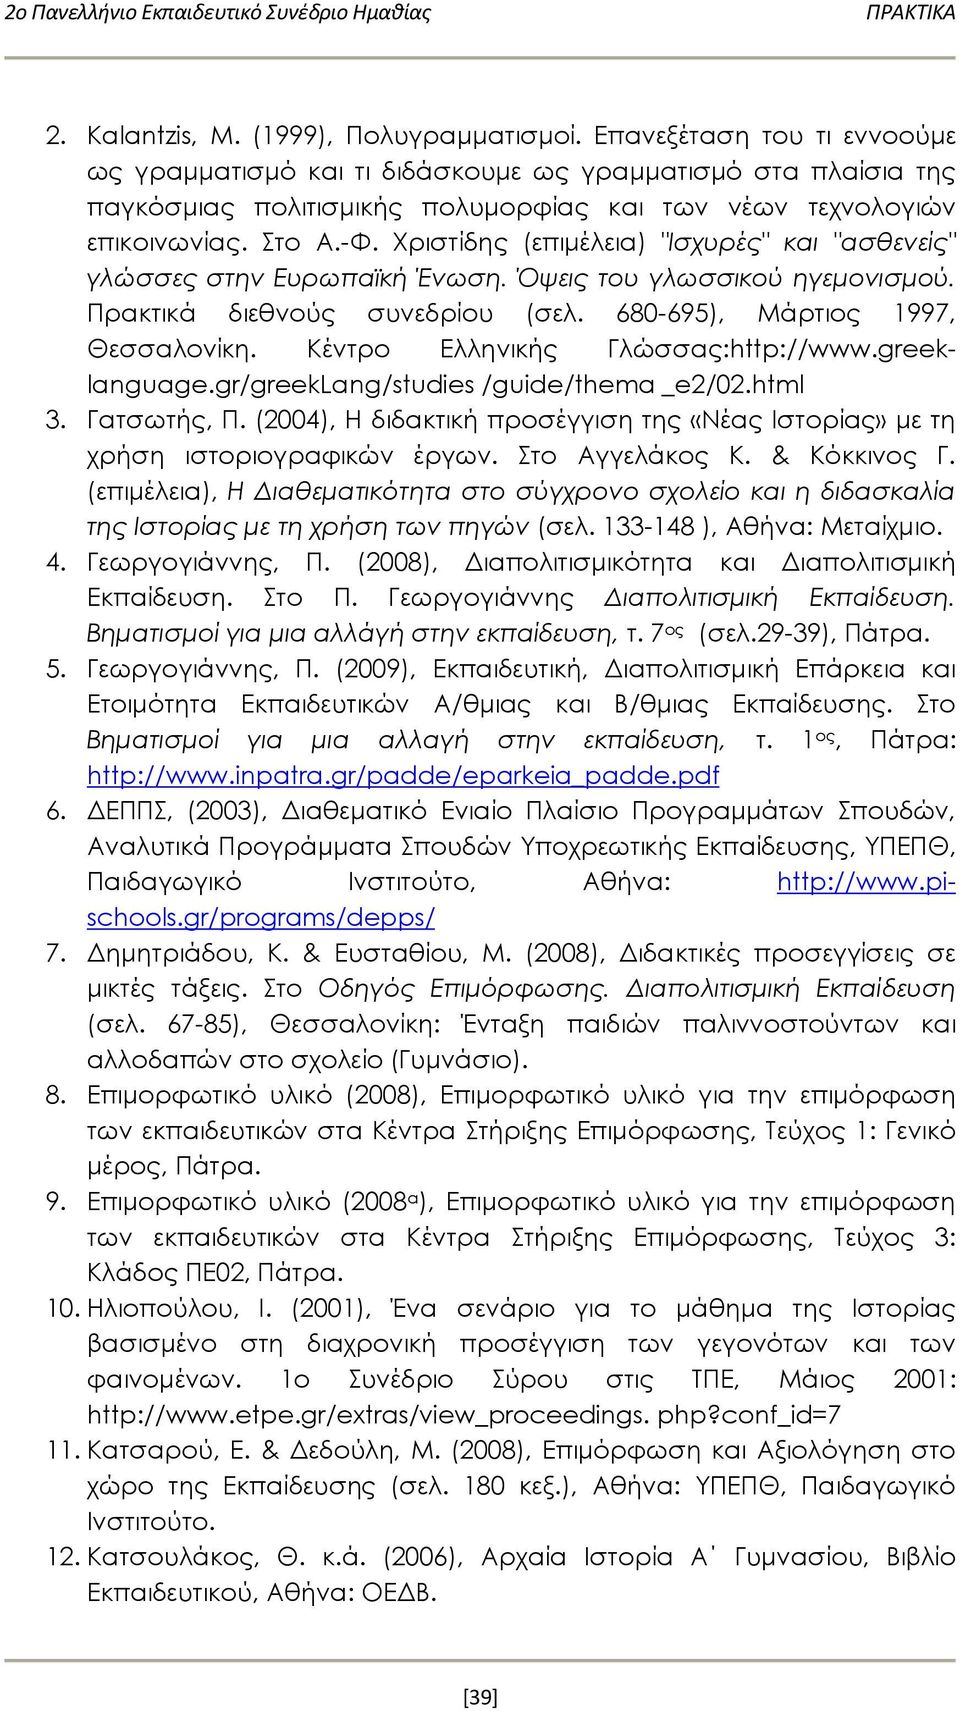 Χριστίδης (επιμέλεια) "Ισχυρές" και "ασθενείς" γλώσσες στην Ευρωπαϊκή Ένωση. Όψεις του γλωσσικού ηγεμονισμού. Πρακτικά διεθνούς συνεδρίου (σελ. 680-695), Μάρτιος 1997, Θεσσαλονίκη.